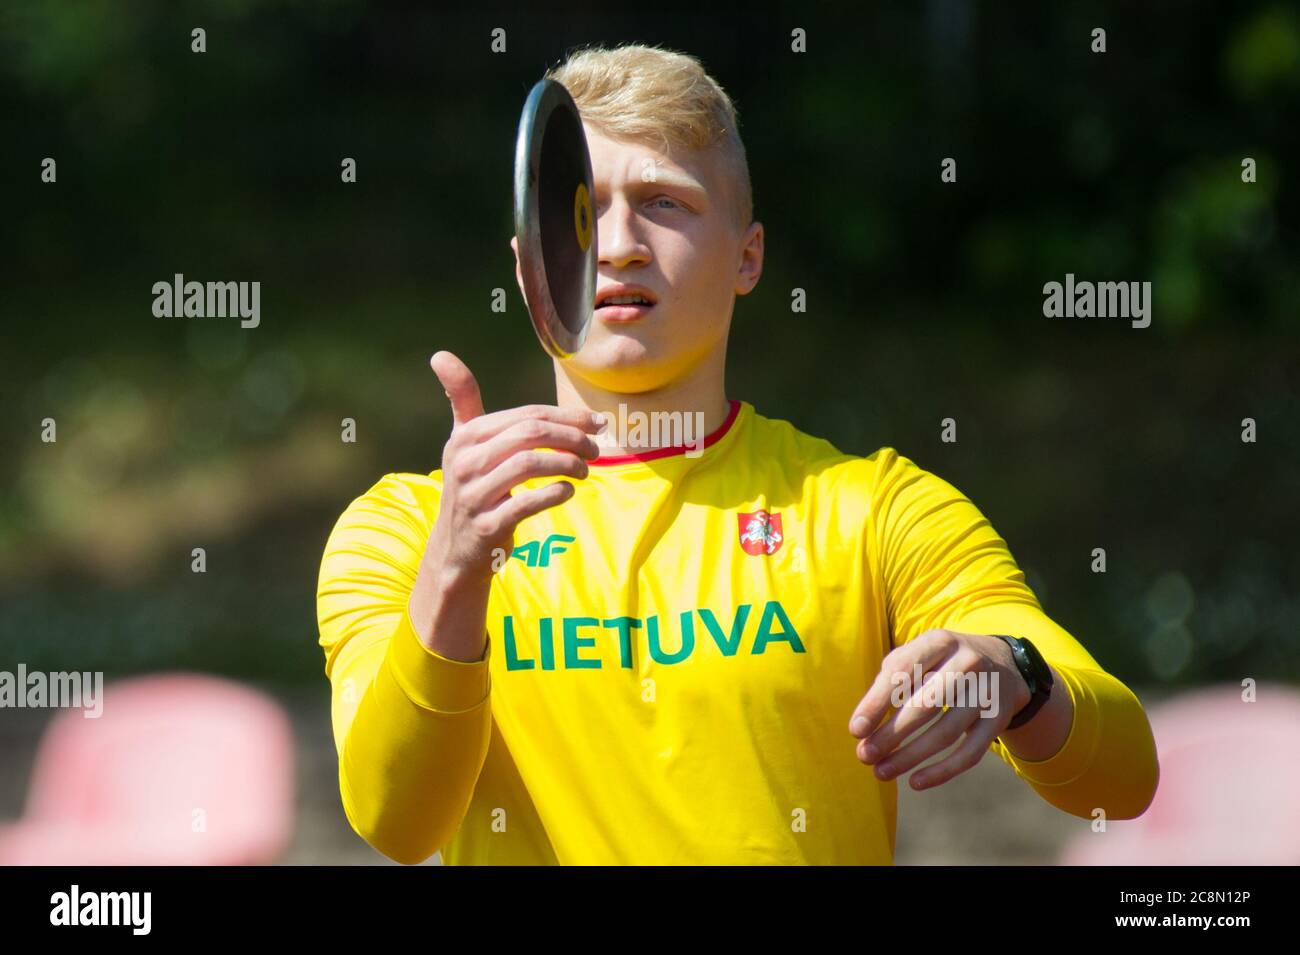 2020 07 25. Campionato lituano di atletica giovanile a Vilnius. Lanciadischi Mykolas Alekna. Foto Stock